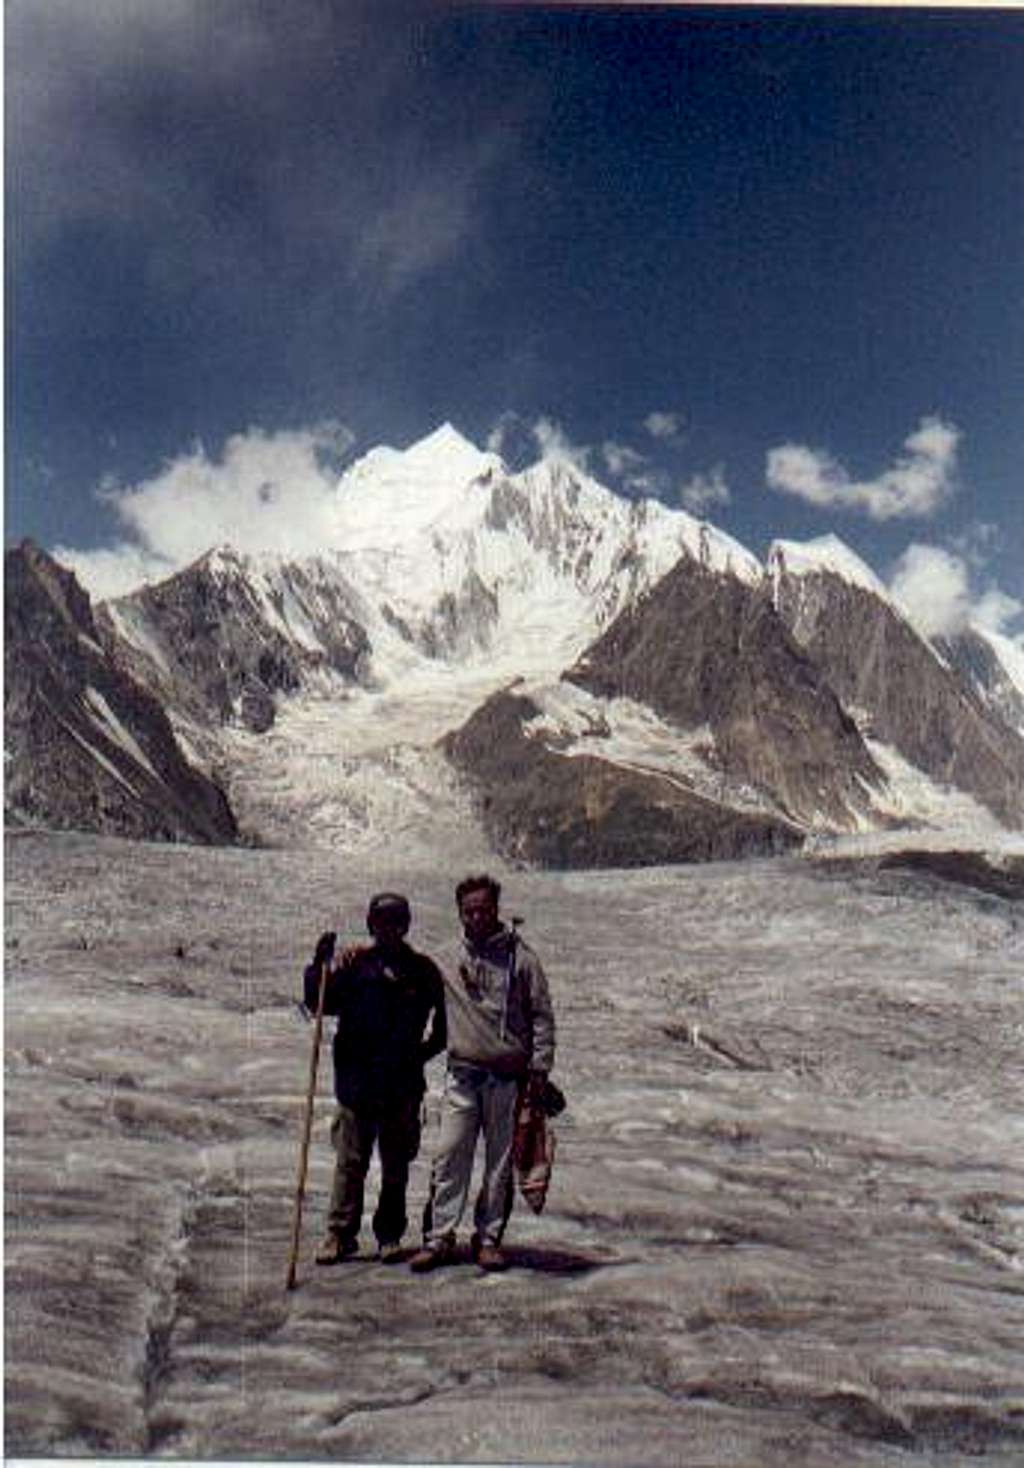 Laila Peak II (6985m)